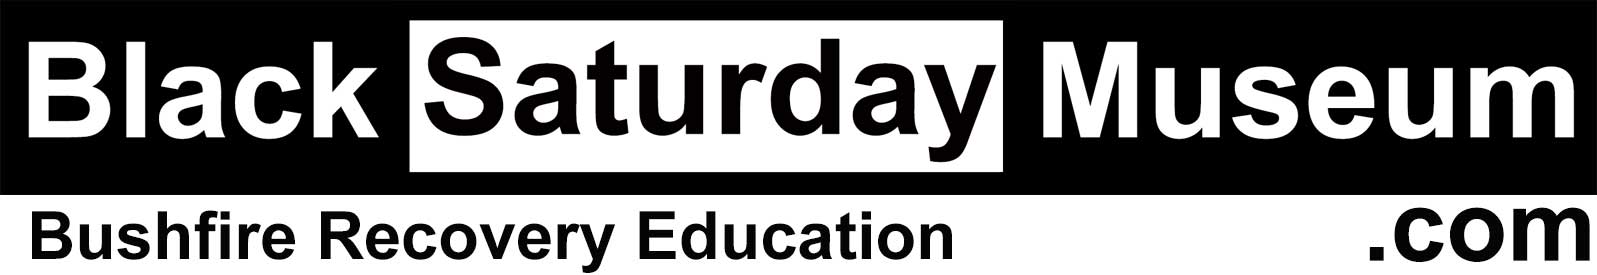 Black Saturday Museum logo